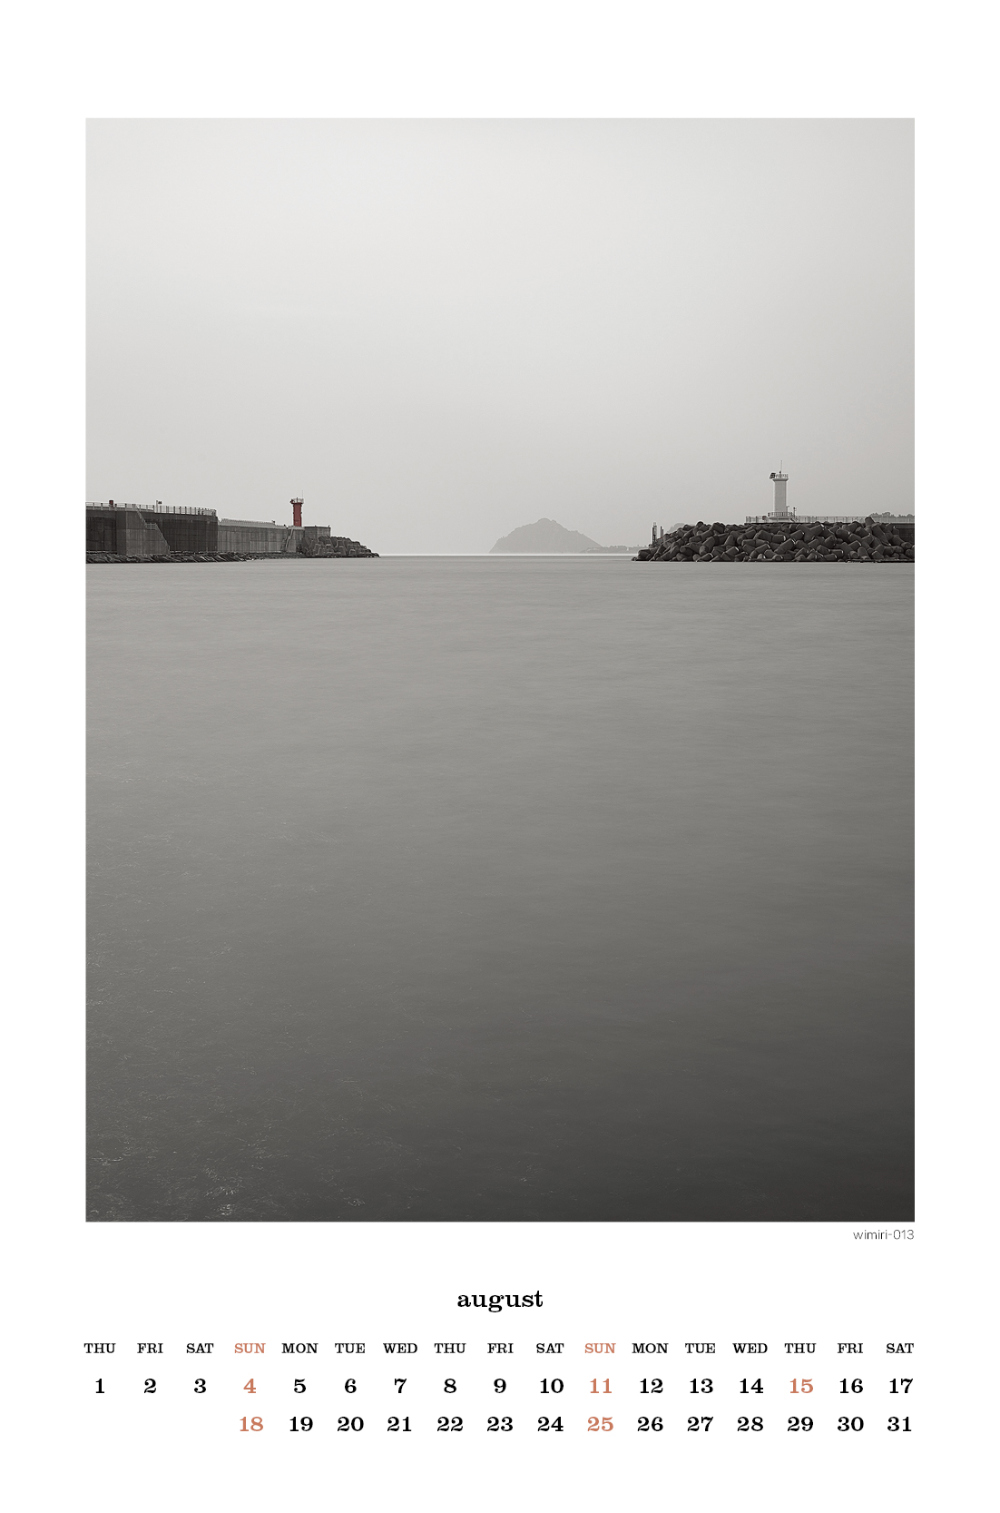 퍼니피쉬 제주도 서귀포 위미 바다 등대 양진 사진 2024년 탁상 달력